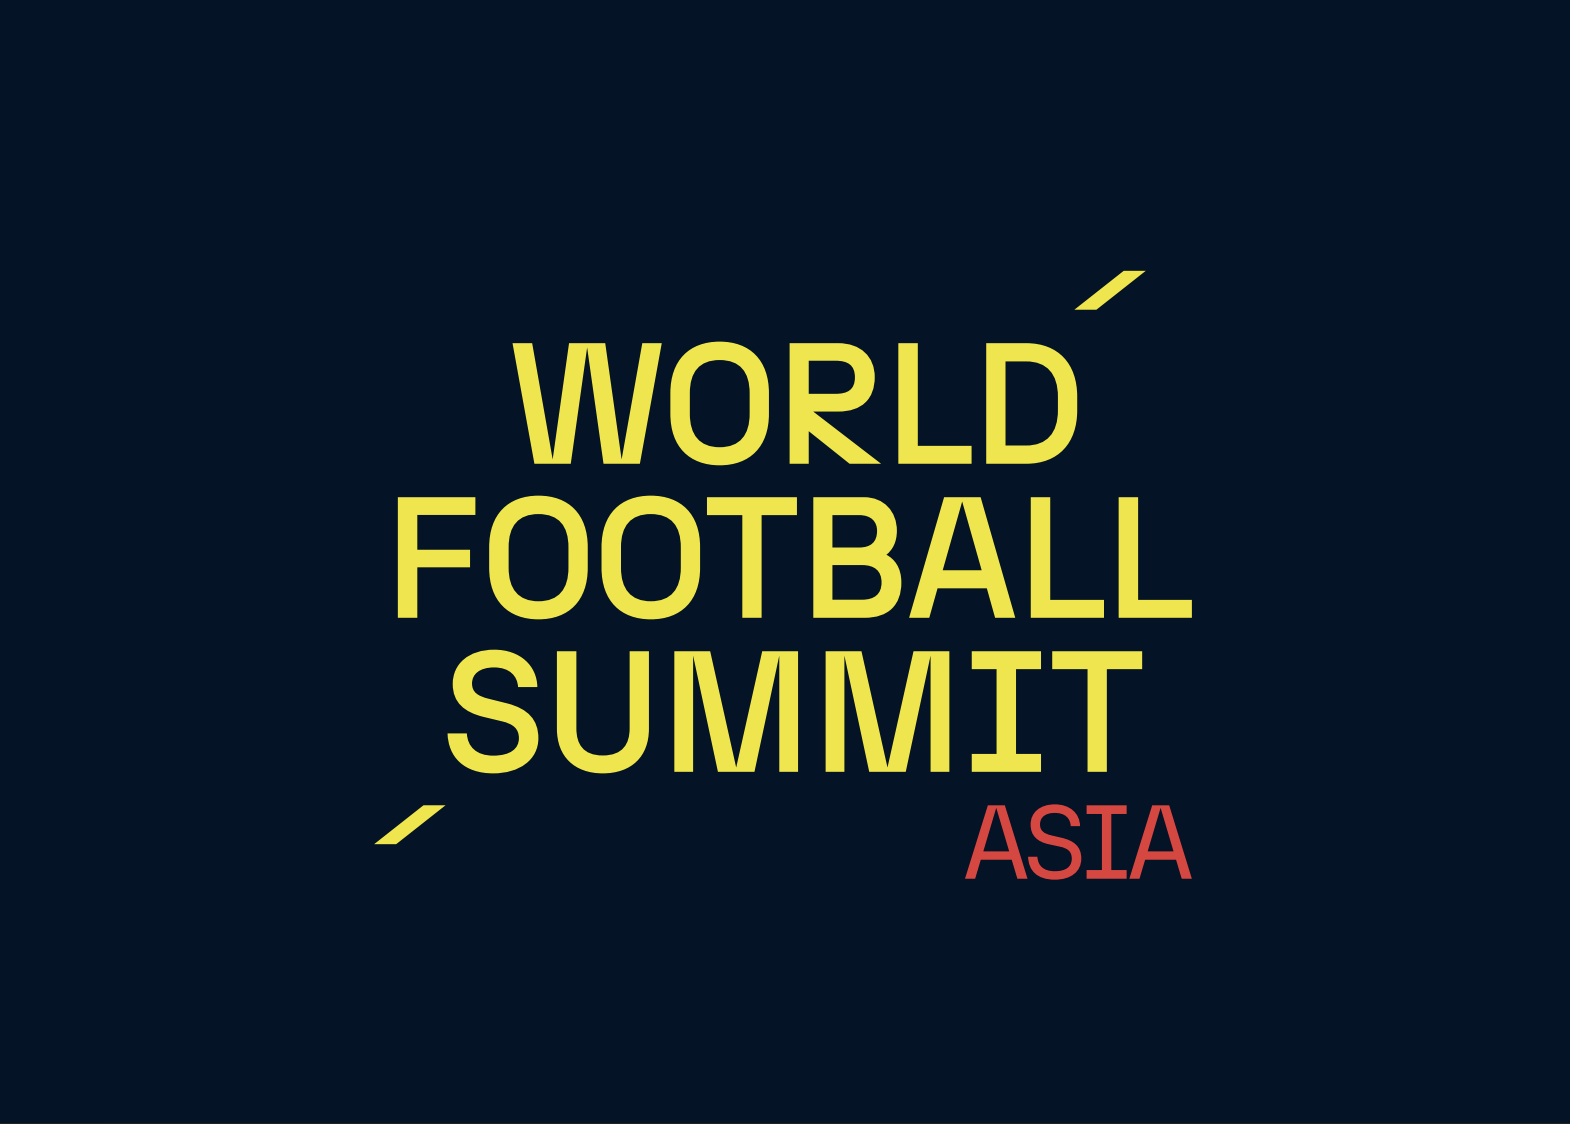 World Football Summit Asia